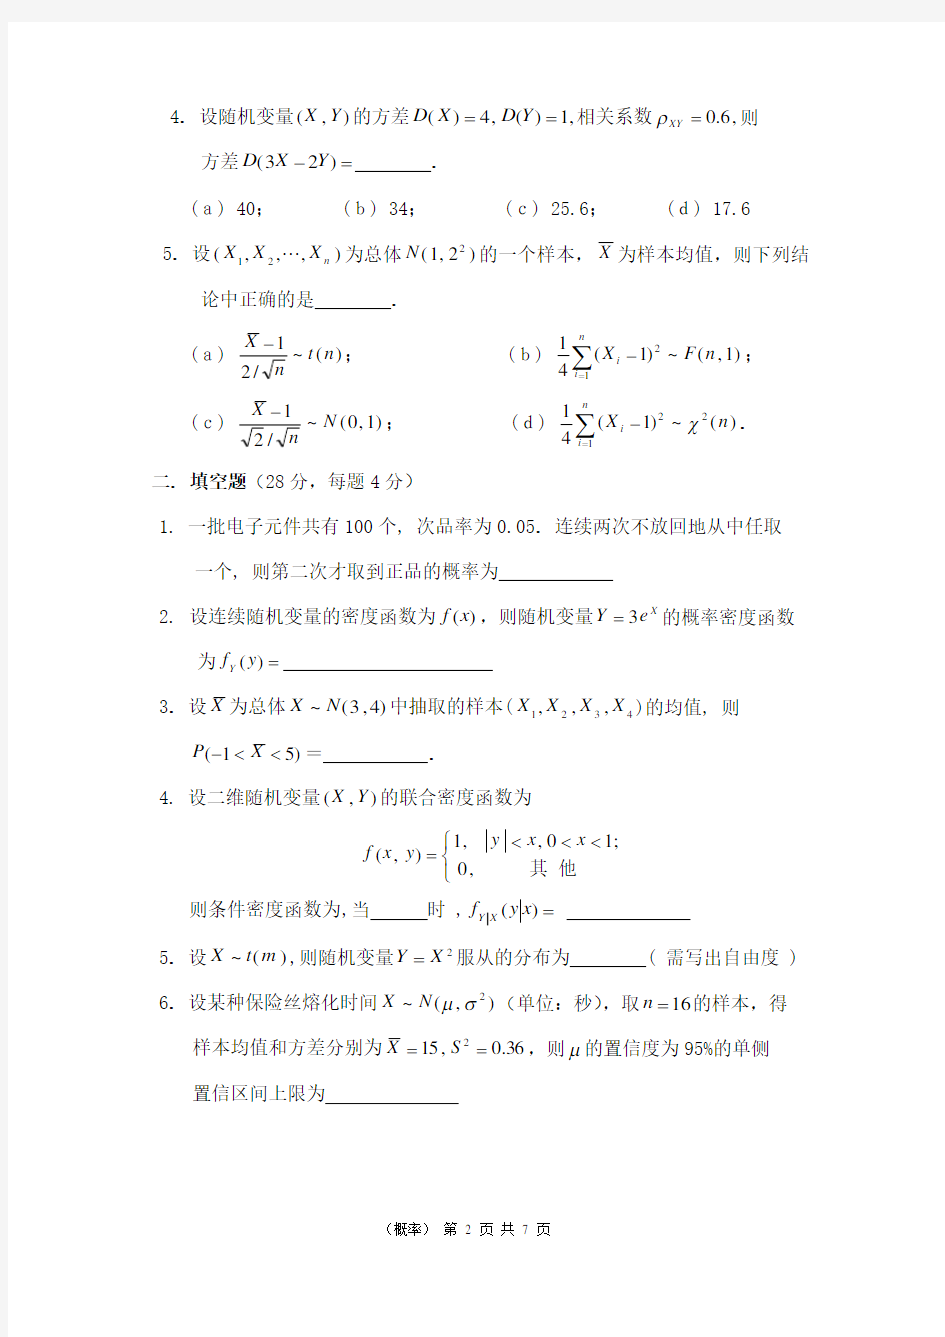 上海交通大学历年概率统计试卷